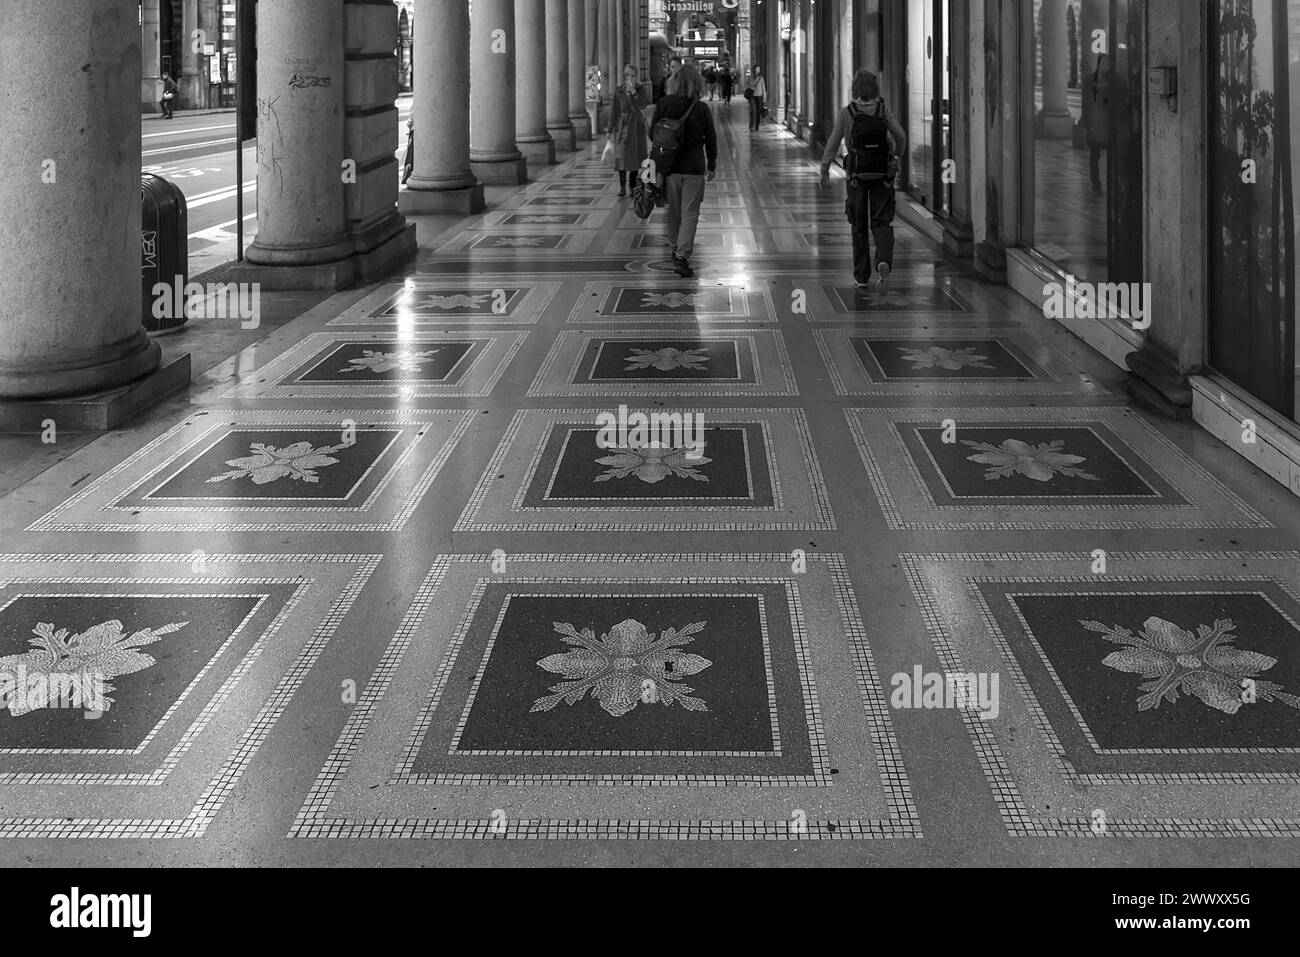 Mosaikboden in den historischen Arkaden des ehemaligen Palazzo der italienischen General Navigation, erbaut 1908, heute Sitz der Region Ligurien Stockfoto